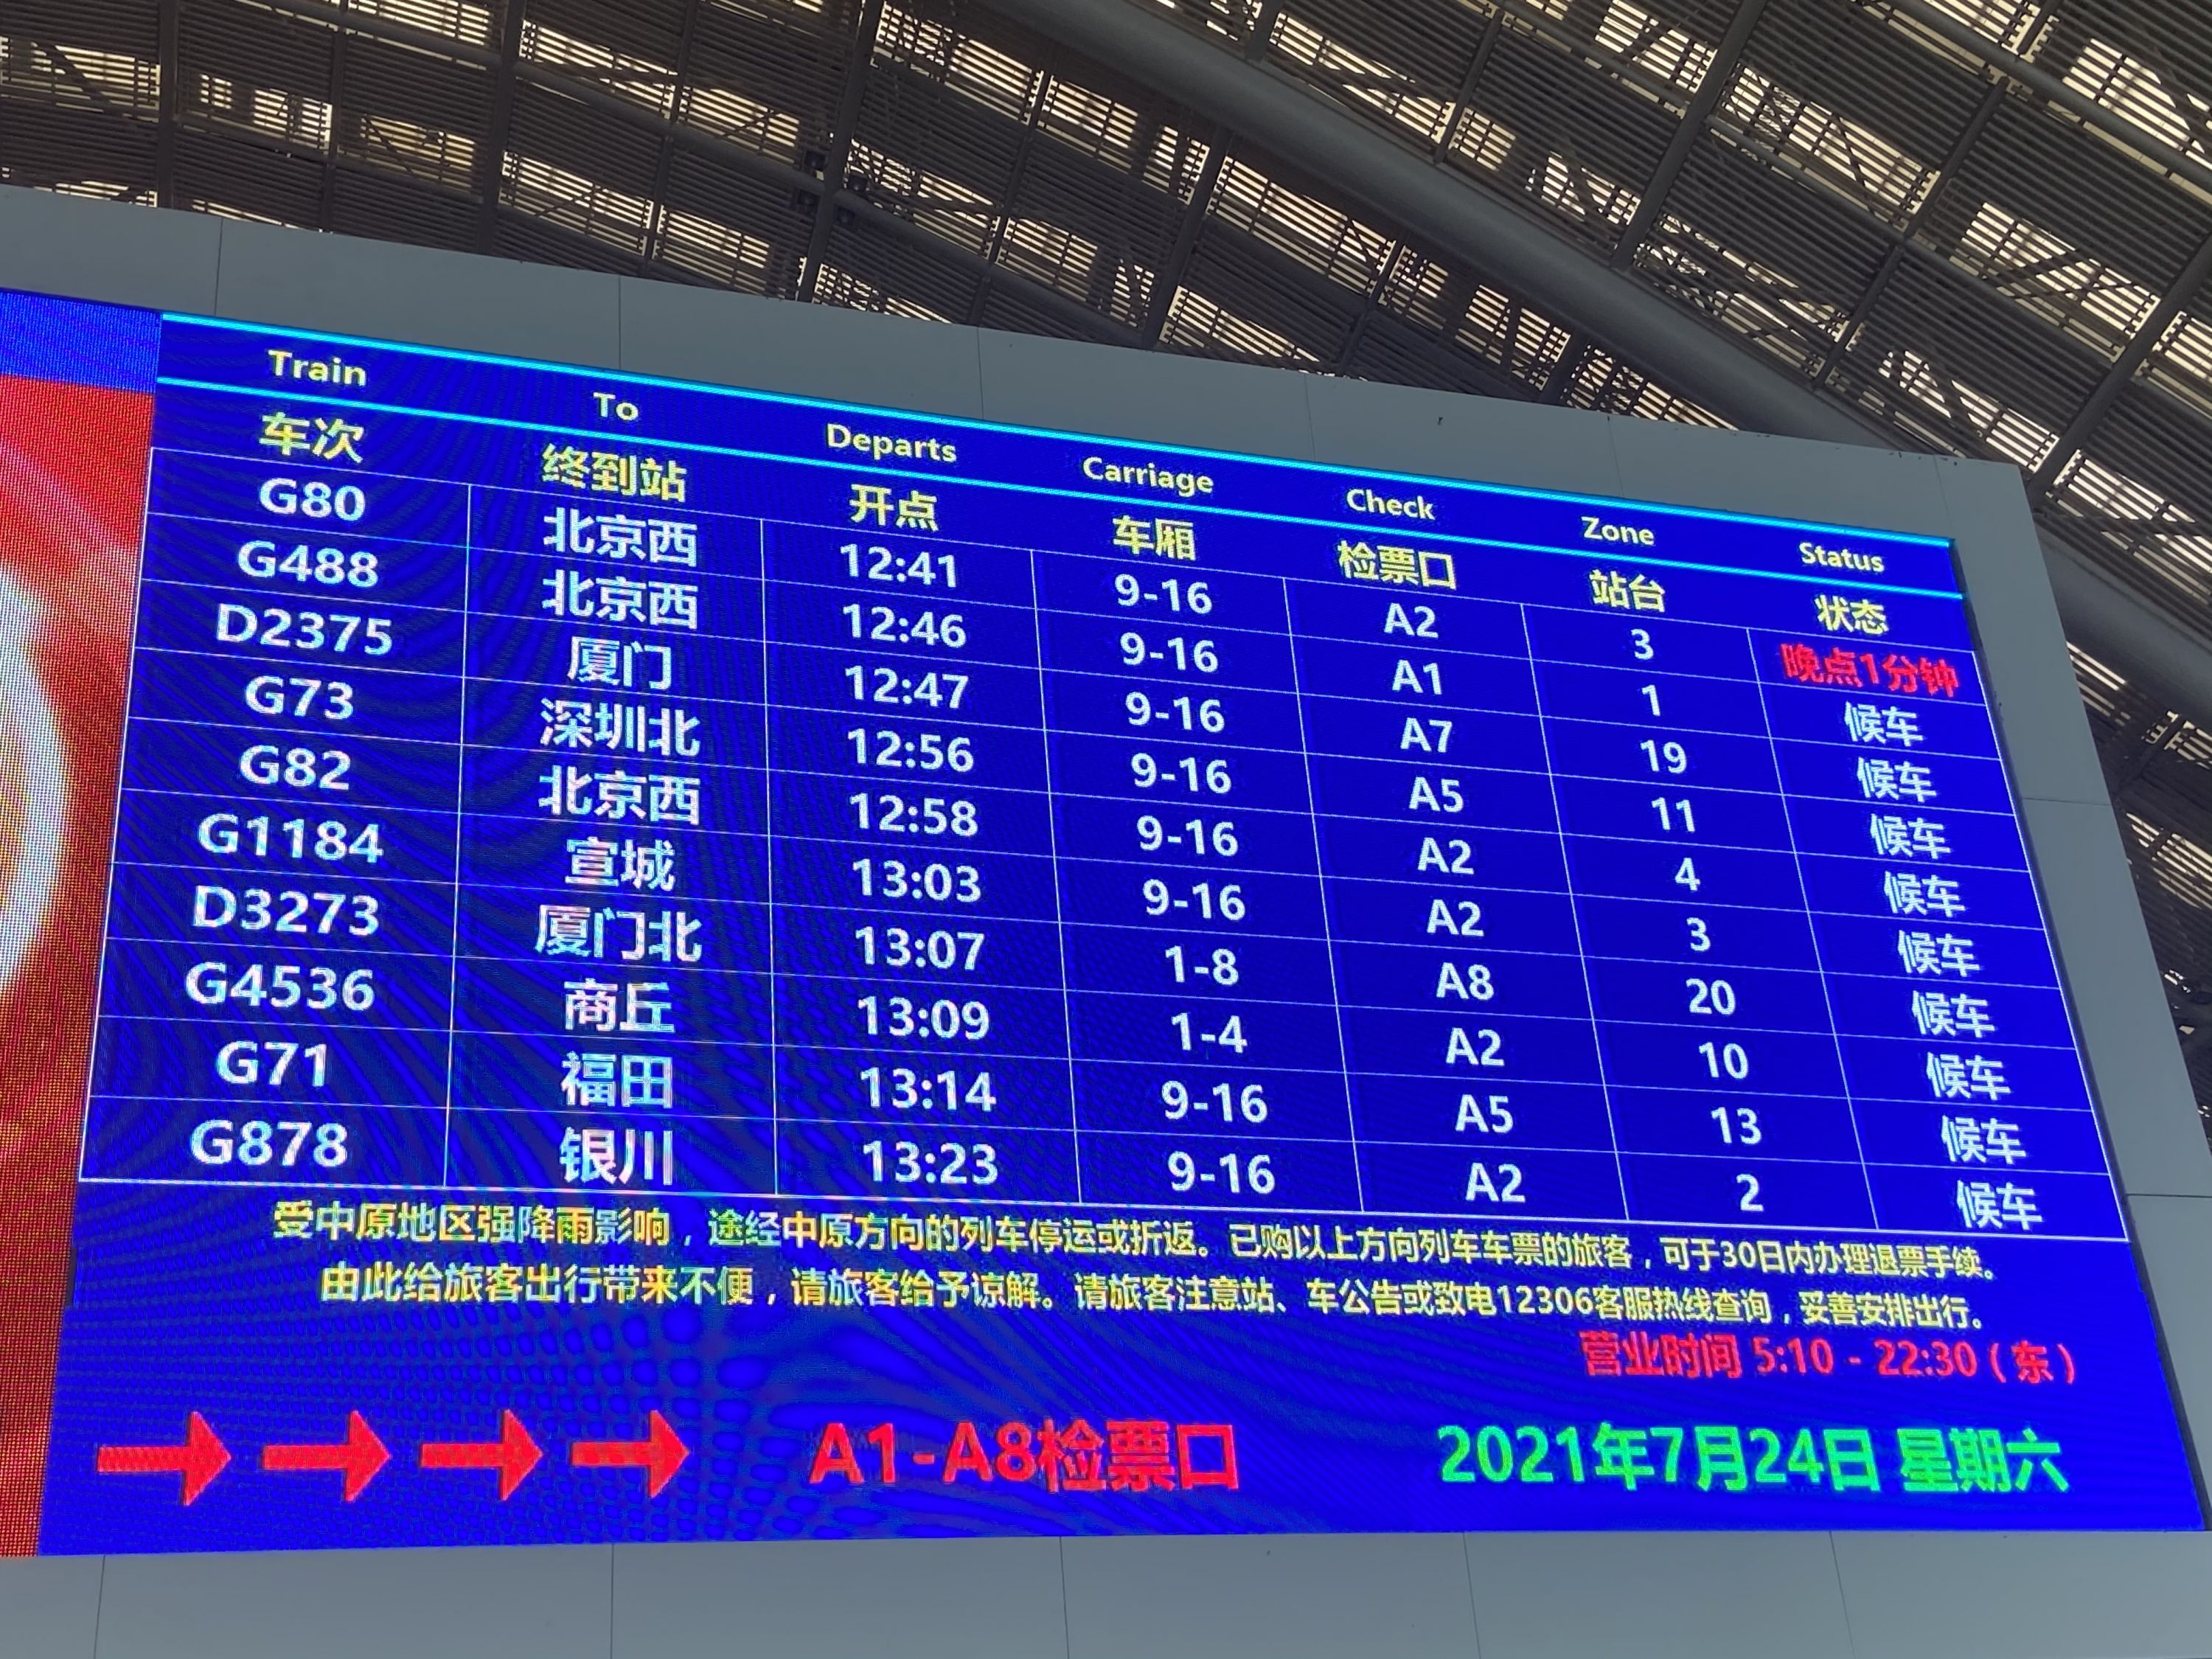 武汉站候车室大屏显示,当天武汉有不少北上的列车,其中在12点到13点